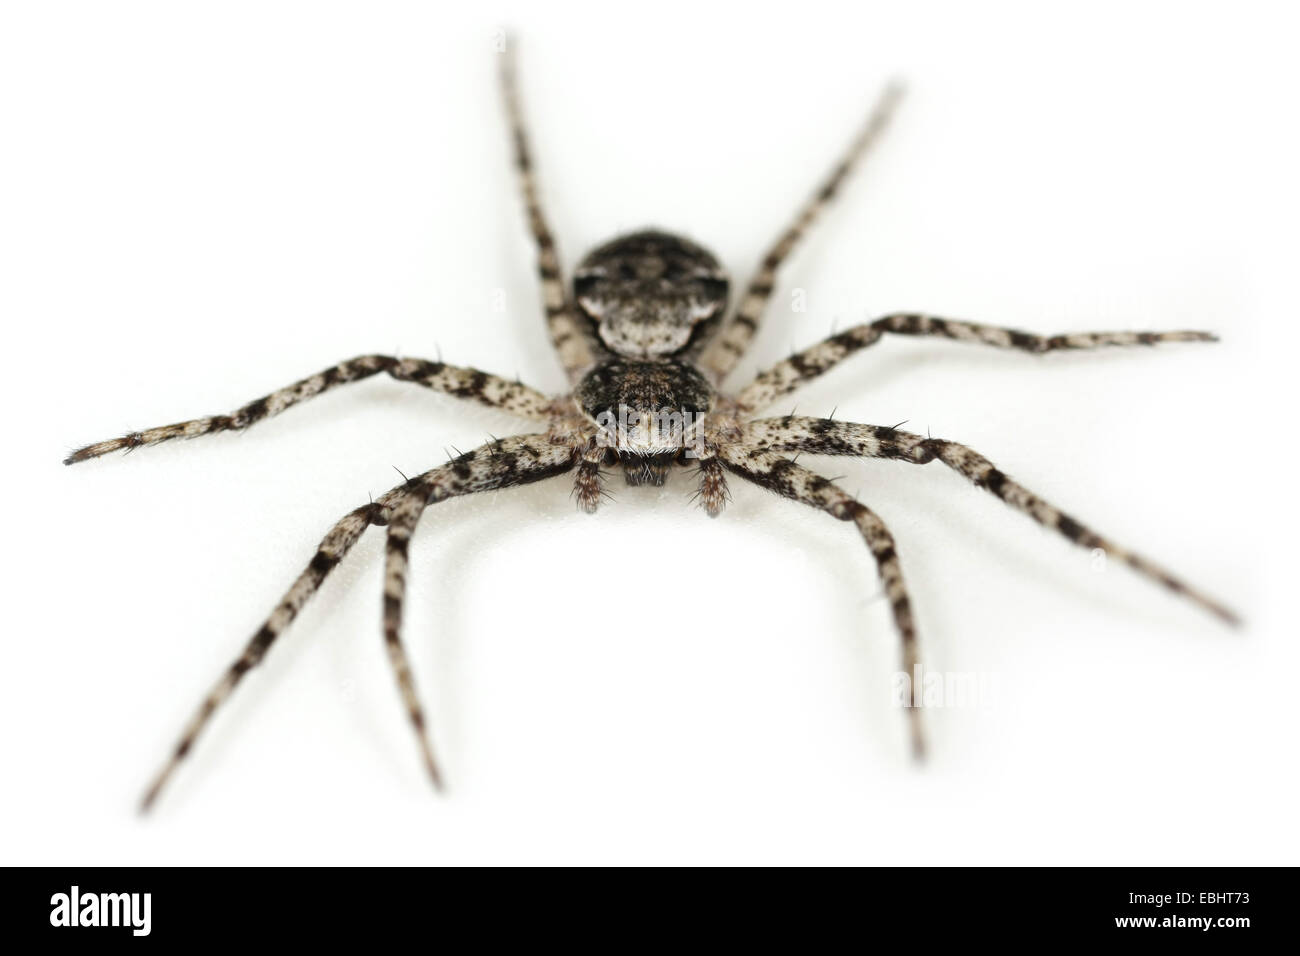 Liquen Running-araña (Philodromus margaritatus) sobre un fondo blanco, parte de la familia Philodromidae - Ejecución de las arañas cangrejo. Foto de stock